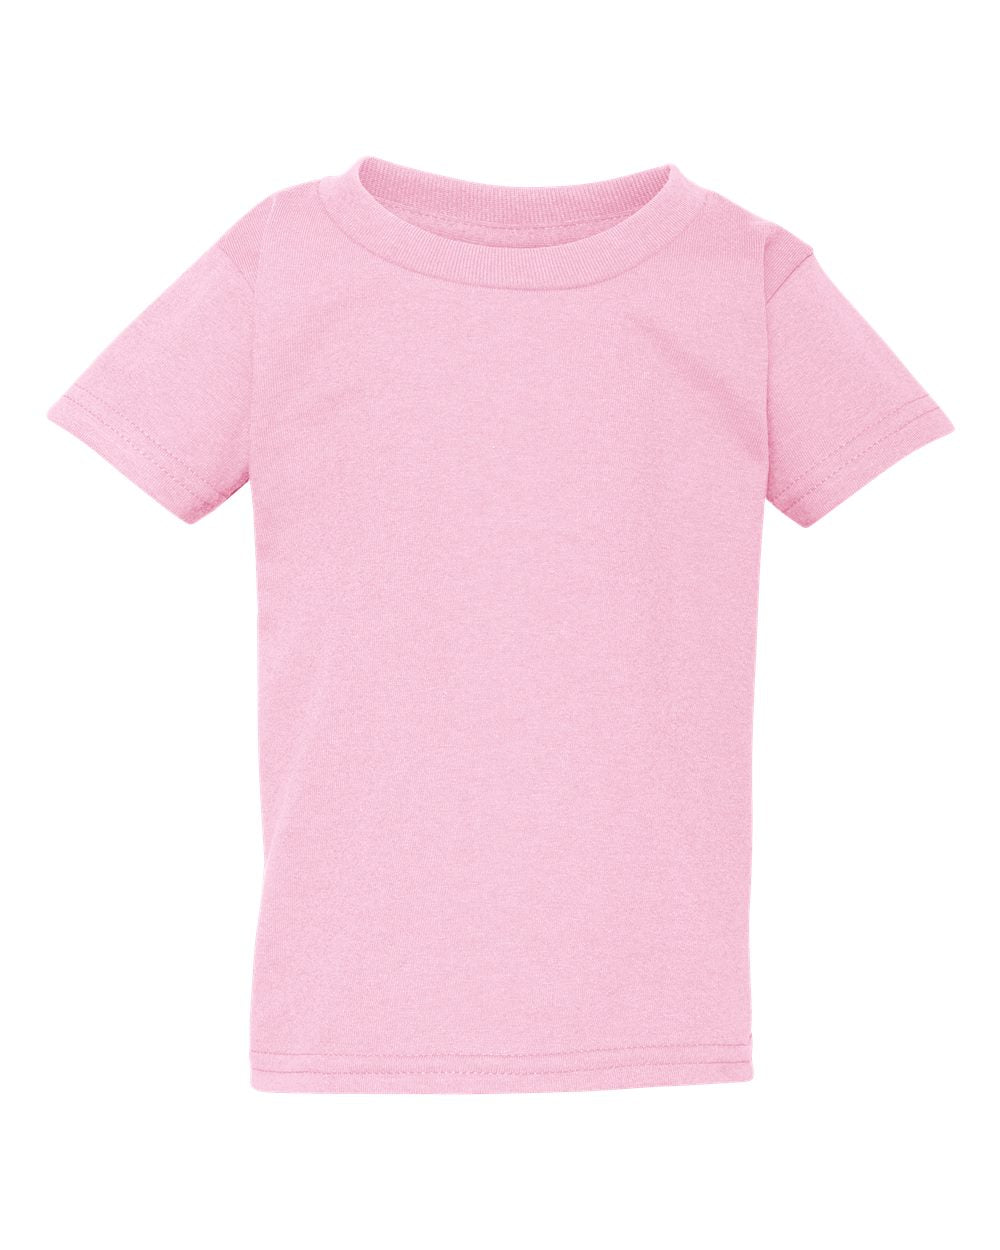 Pink Chicken Nugs T-Shirt